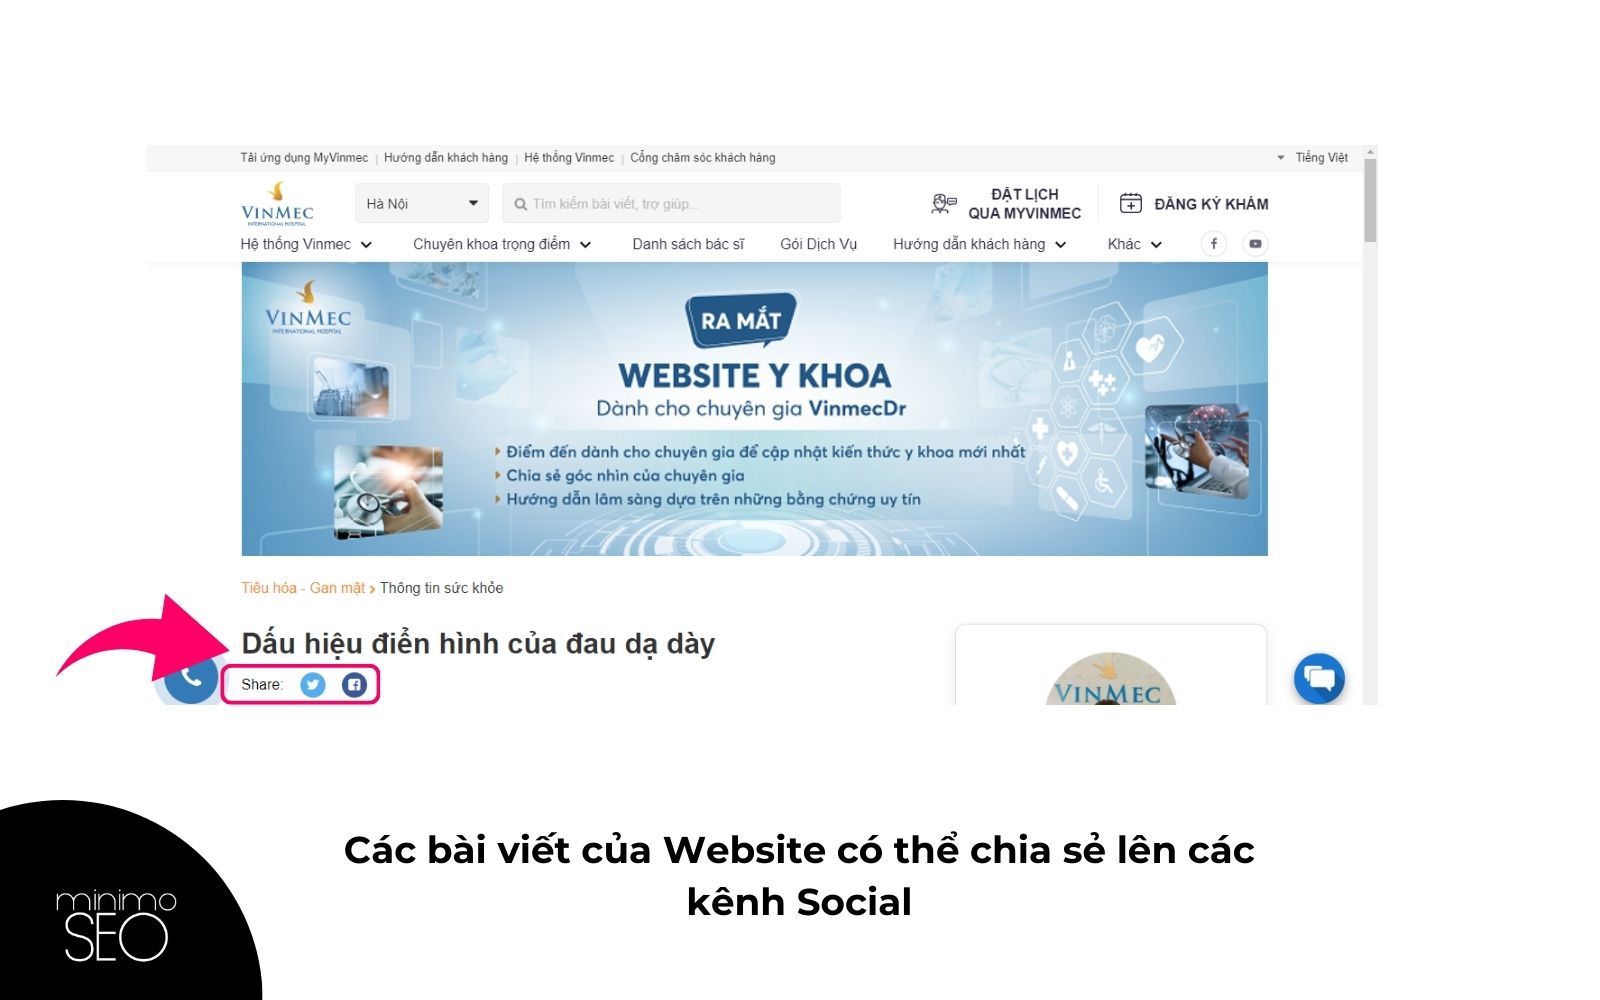 lien-ket-social-va-website